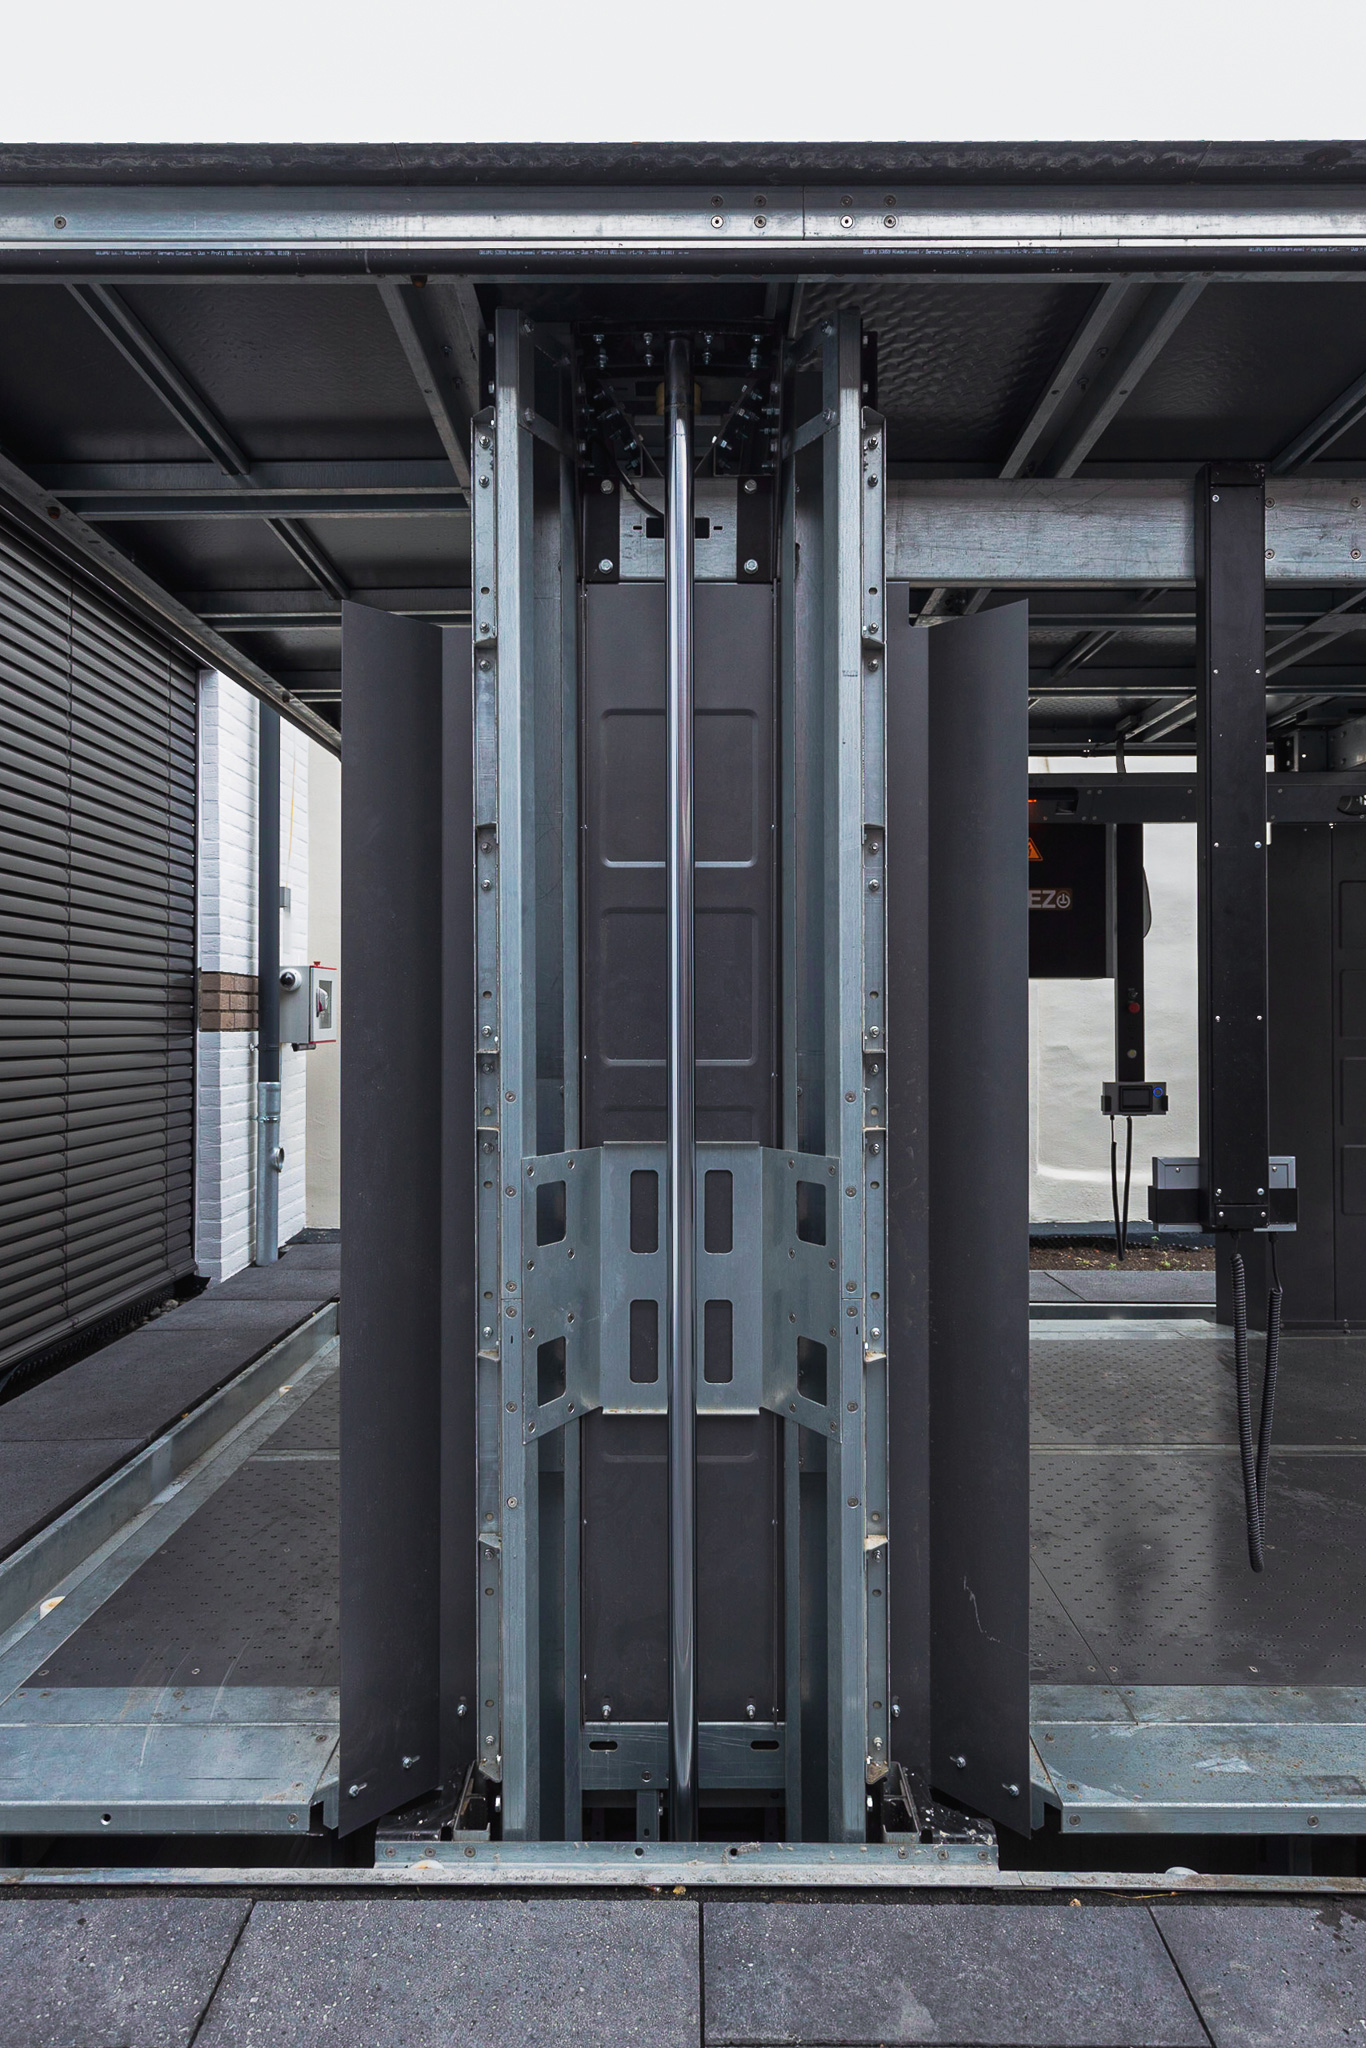 Car elevator with hydraulic cylinders